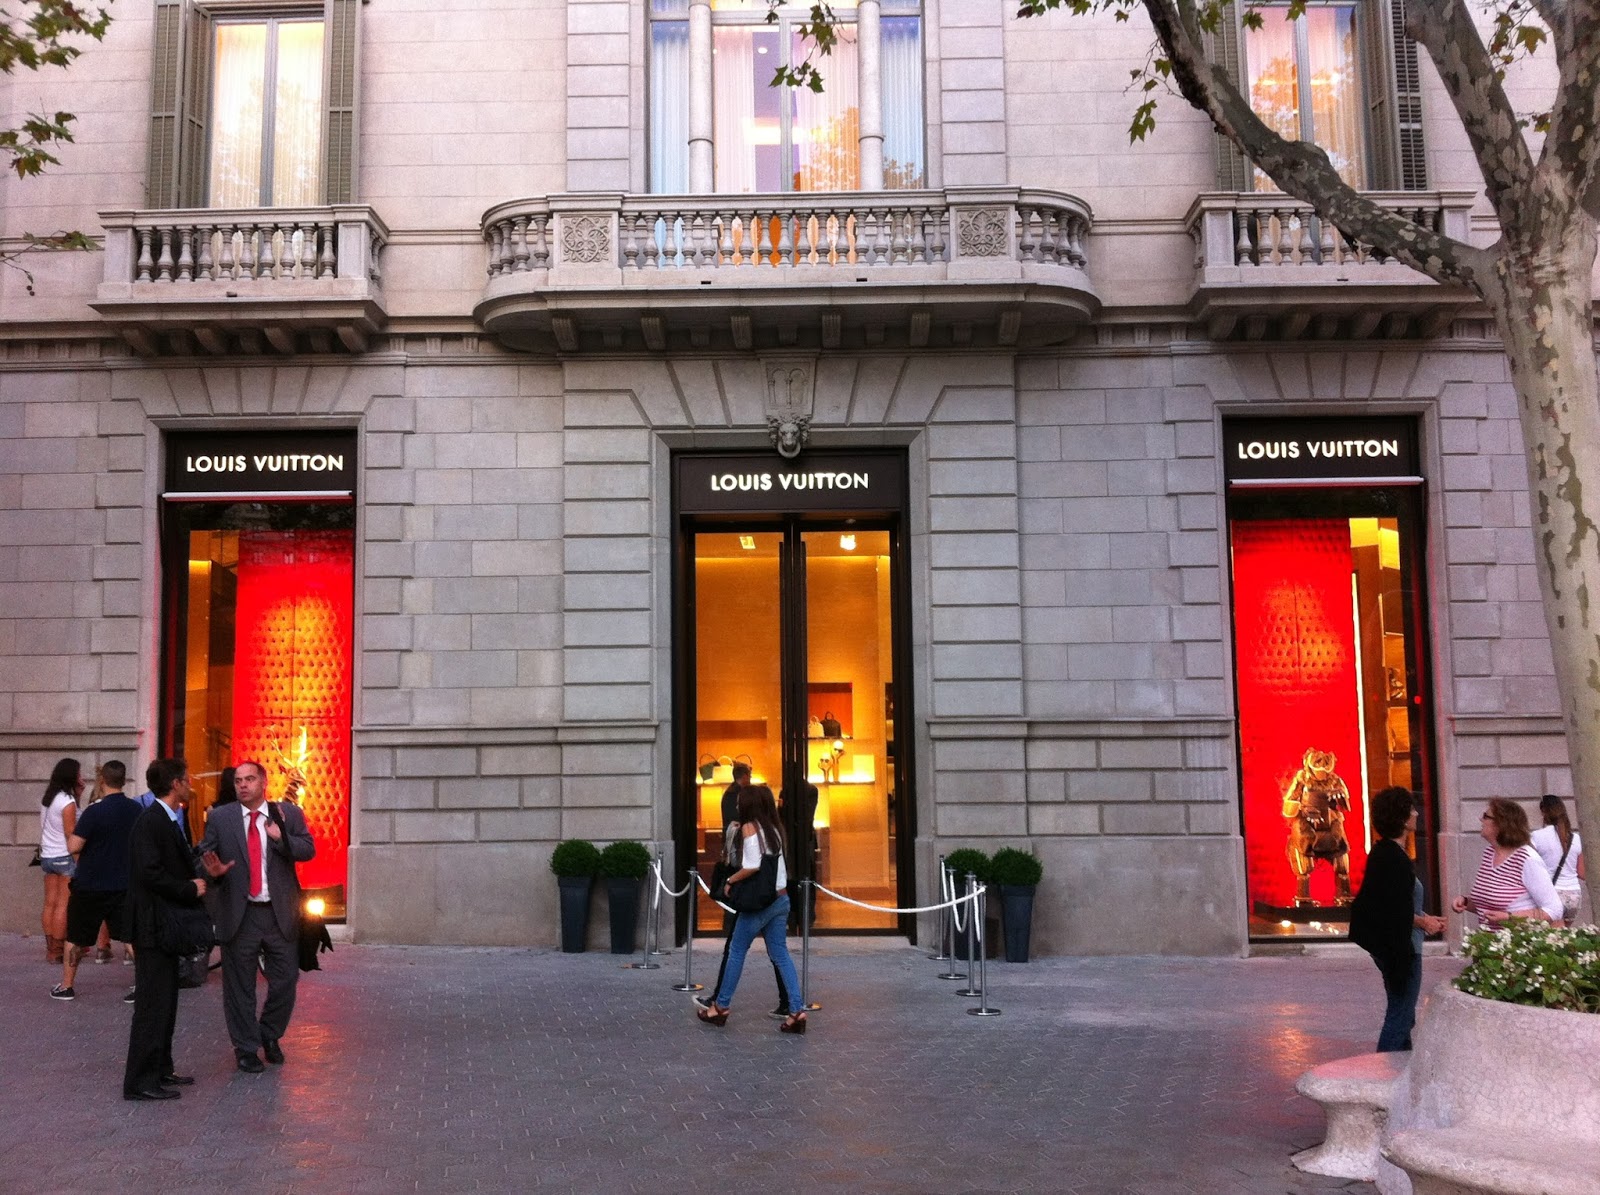 Tienda Louis Vuitton Barcelona Paseo De Gracia | Confederated Tribes of the Umatilla Indian ...